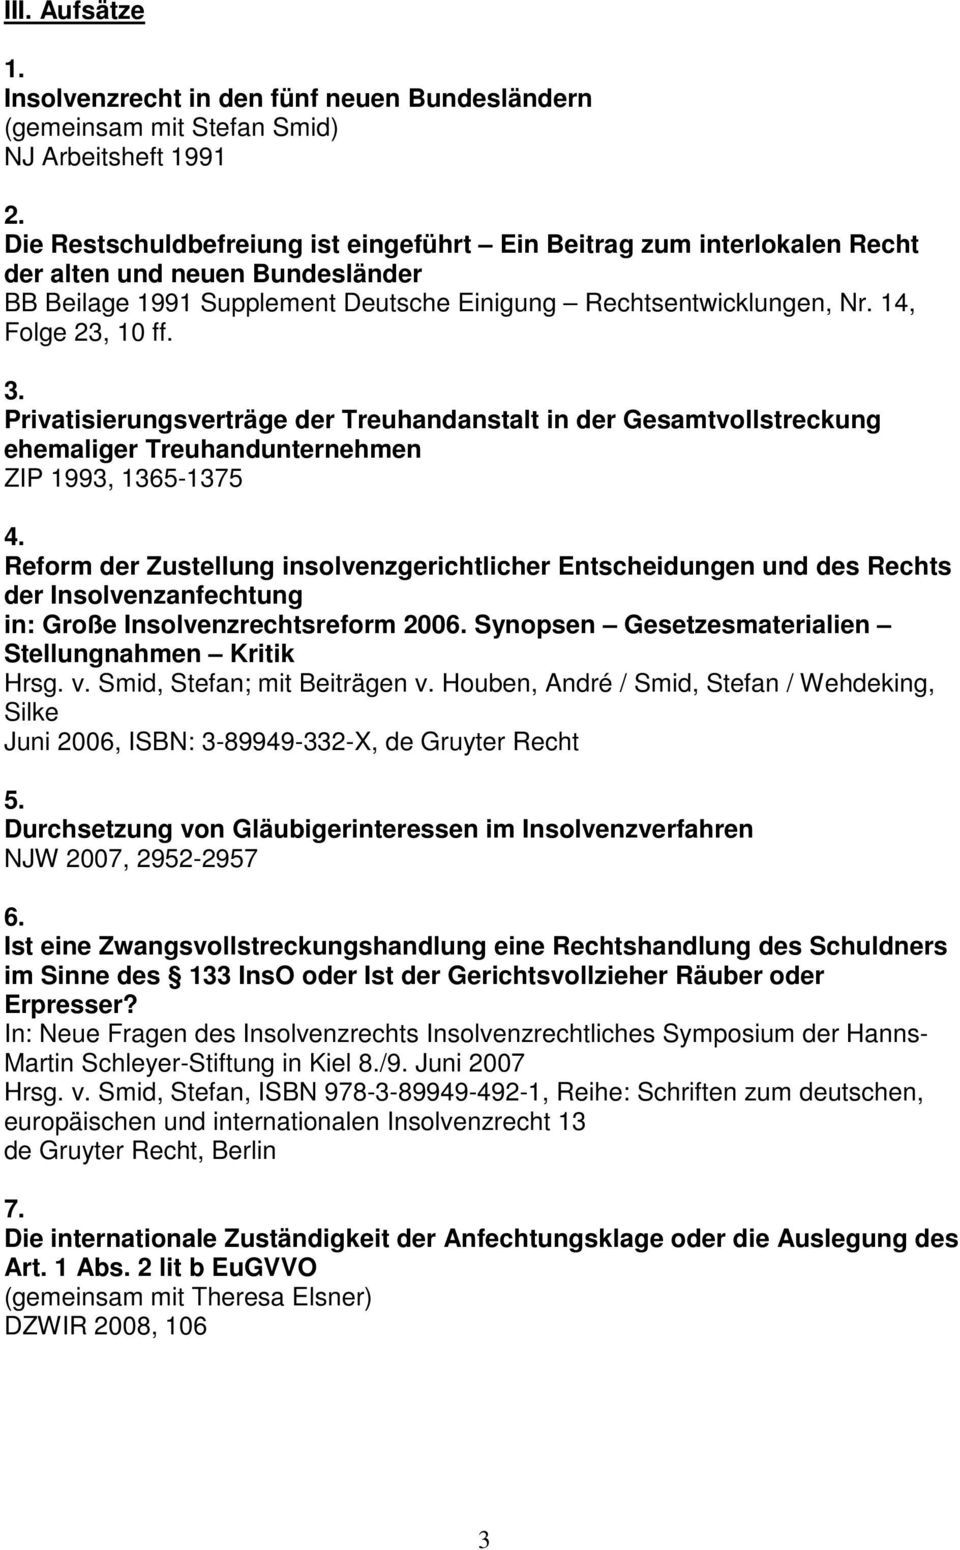 Privatisierungsverträge der Treuhandanstalt in der Gesamtvollstreckung ehemaliger Treuhandunternehmen ZIP 1993, 1365-1375 4.